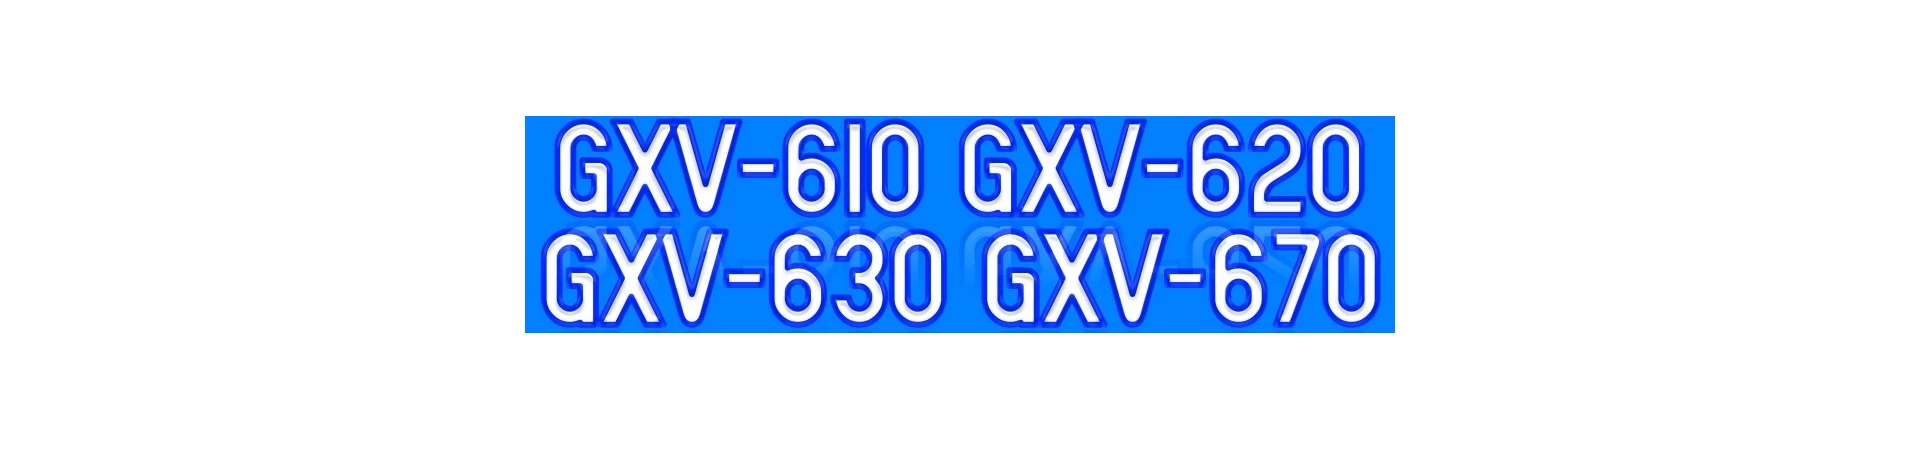 GXV610 GXV620 GXV630 GXV670